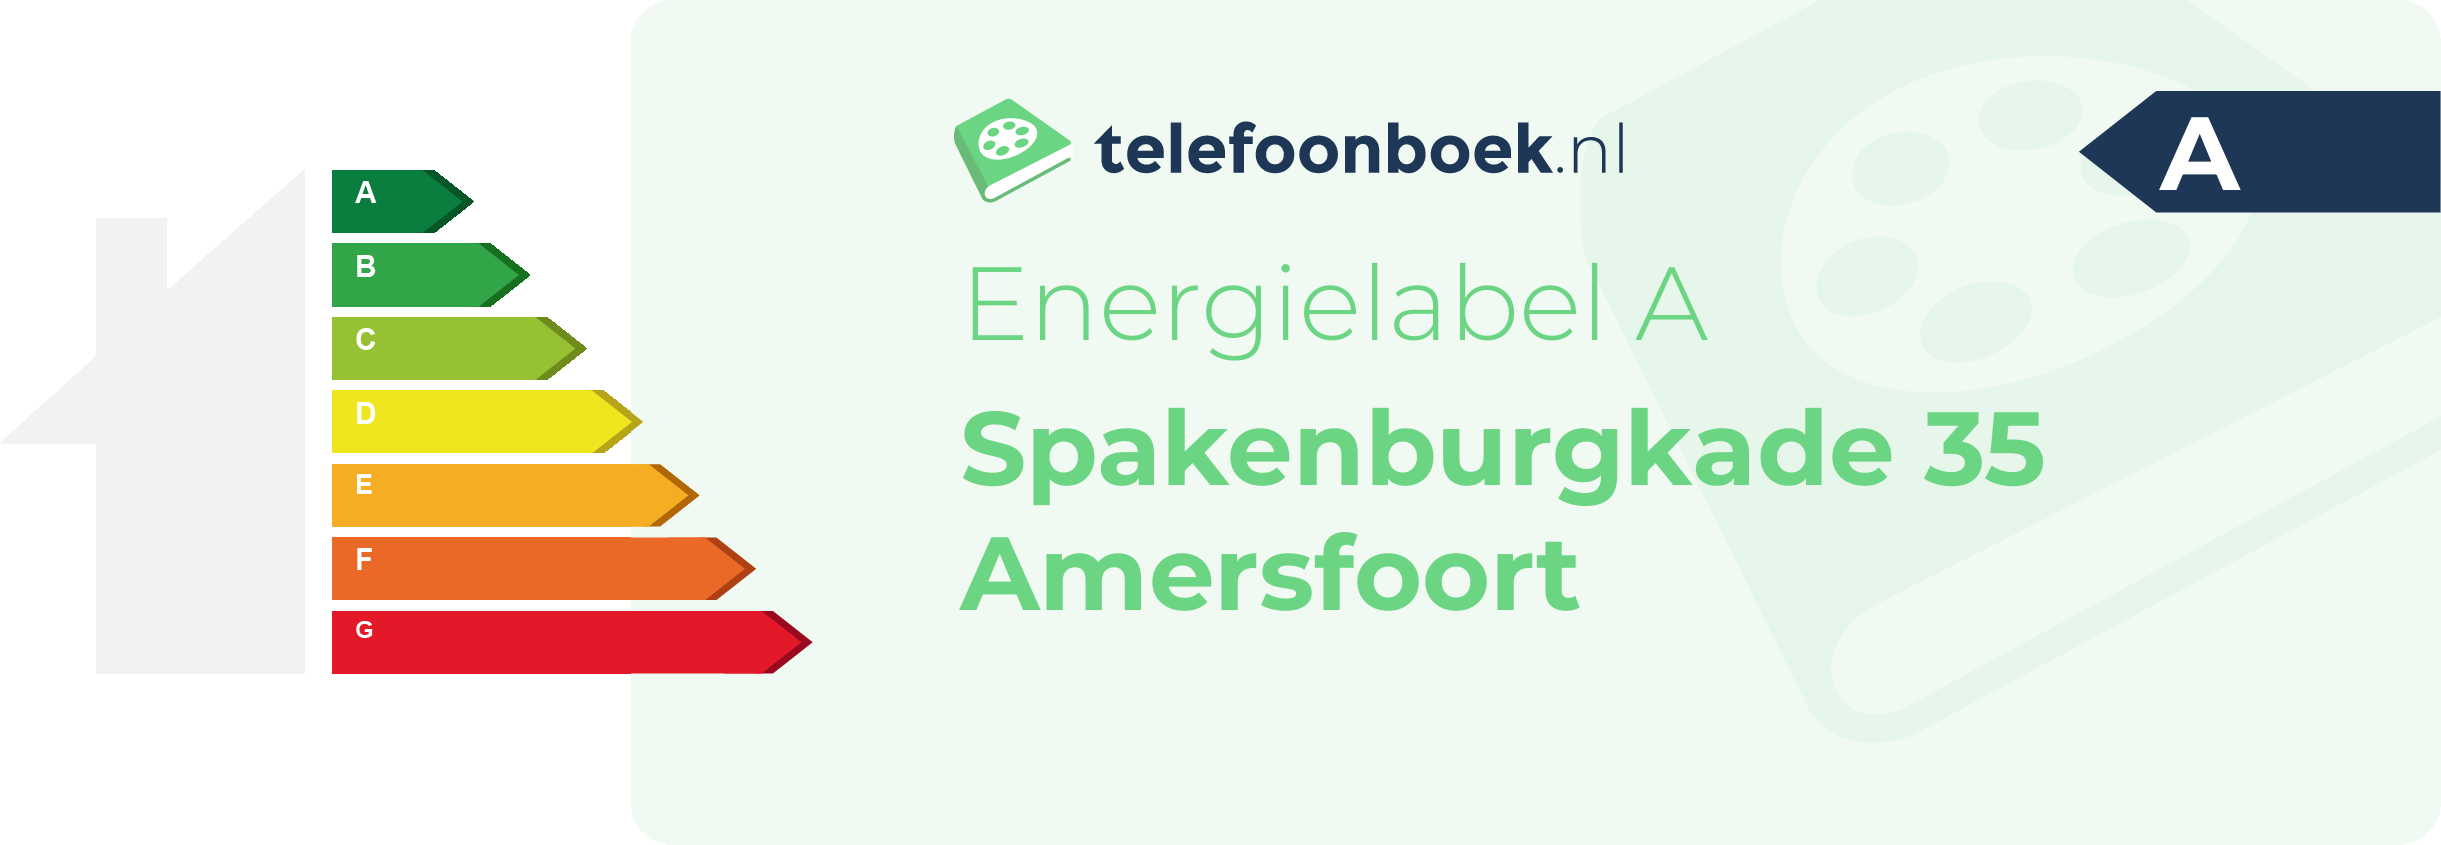 Energielabel Spakenburgkade 35 Amersfoort